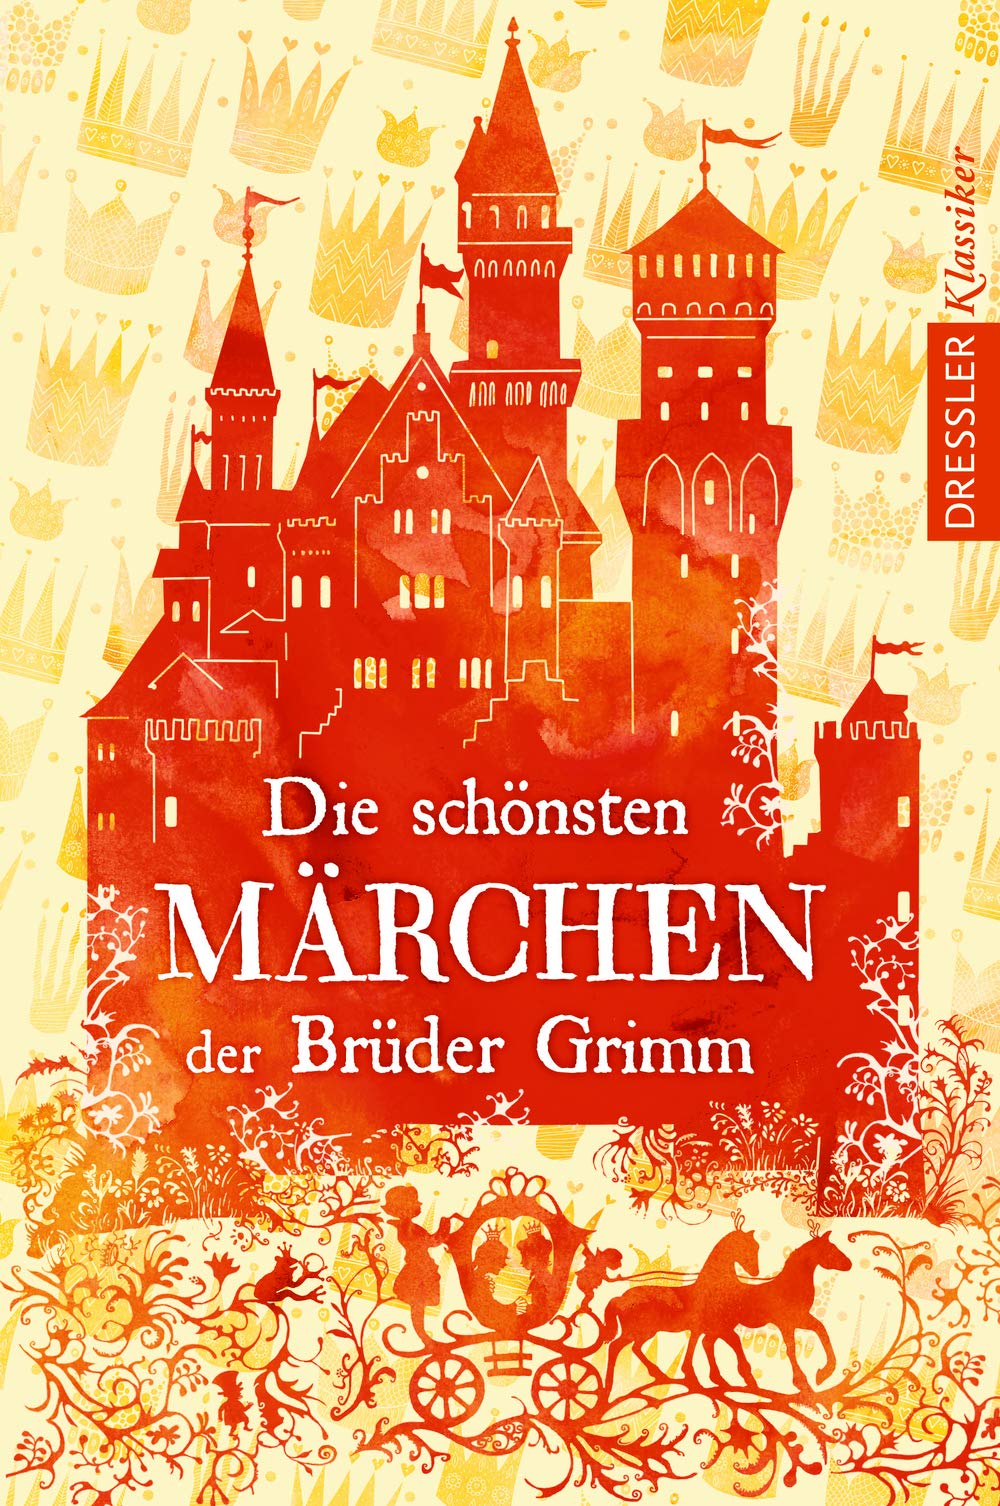 Die schonsten Marchen der Bruder Grimm | Jacob Grimm, Wilhelm Grimm